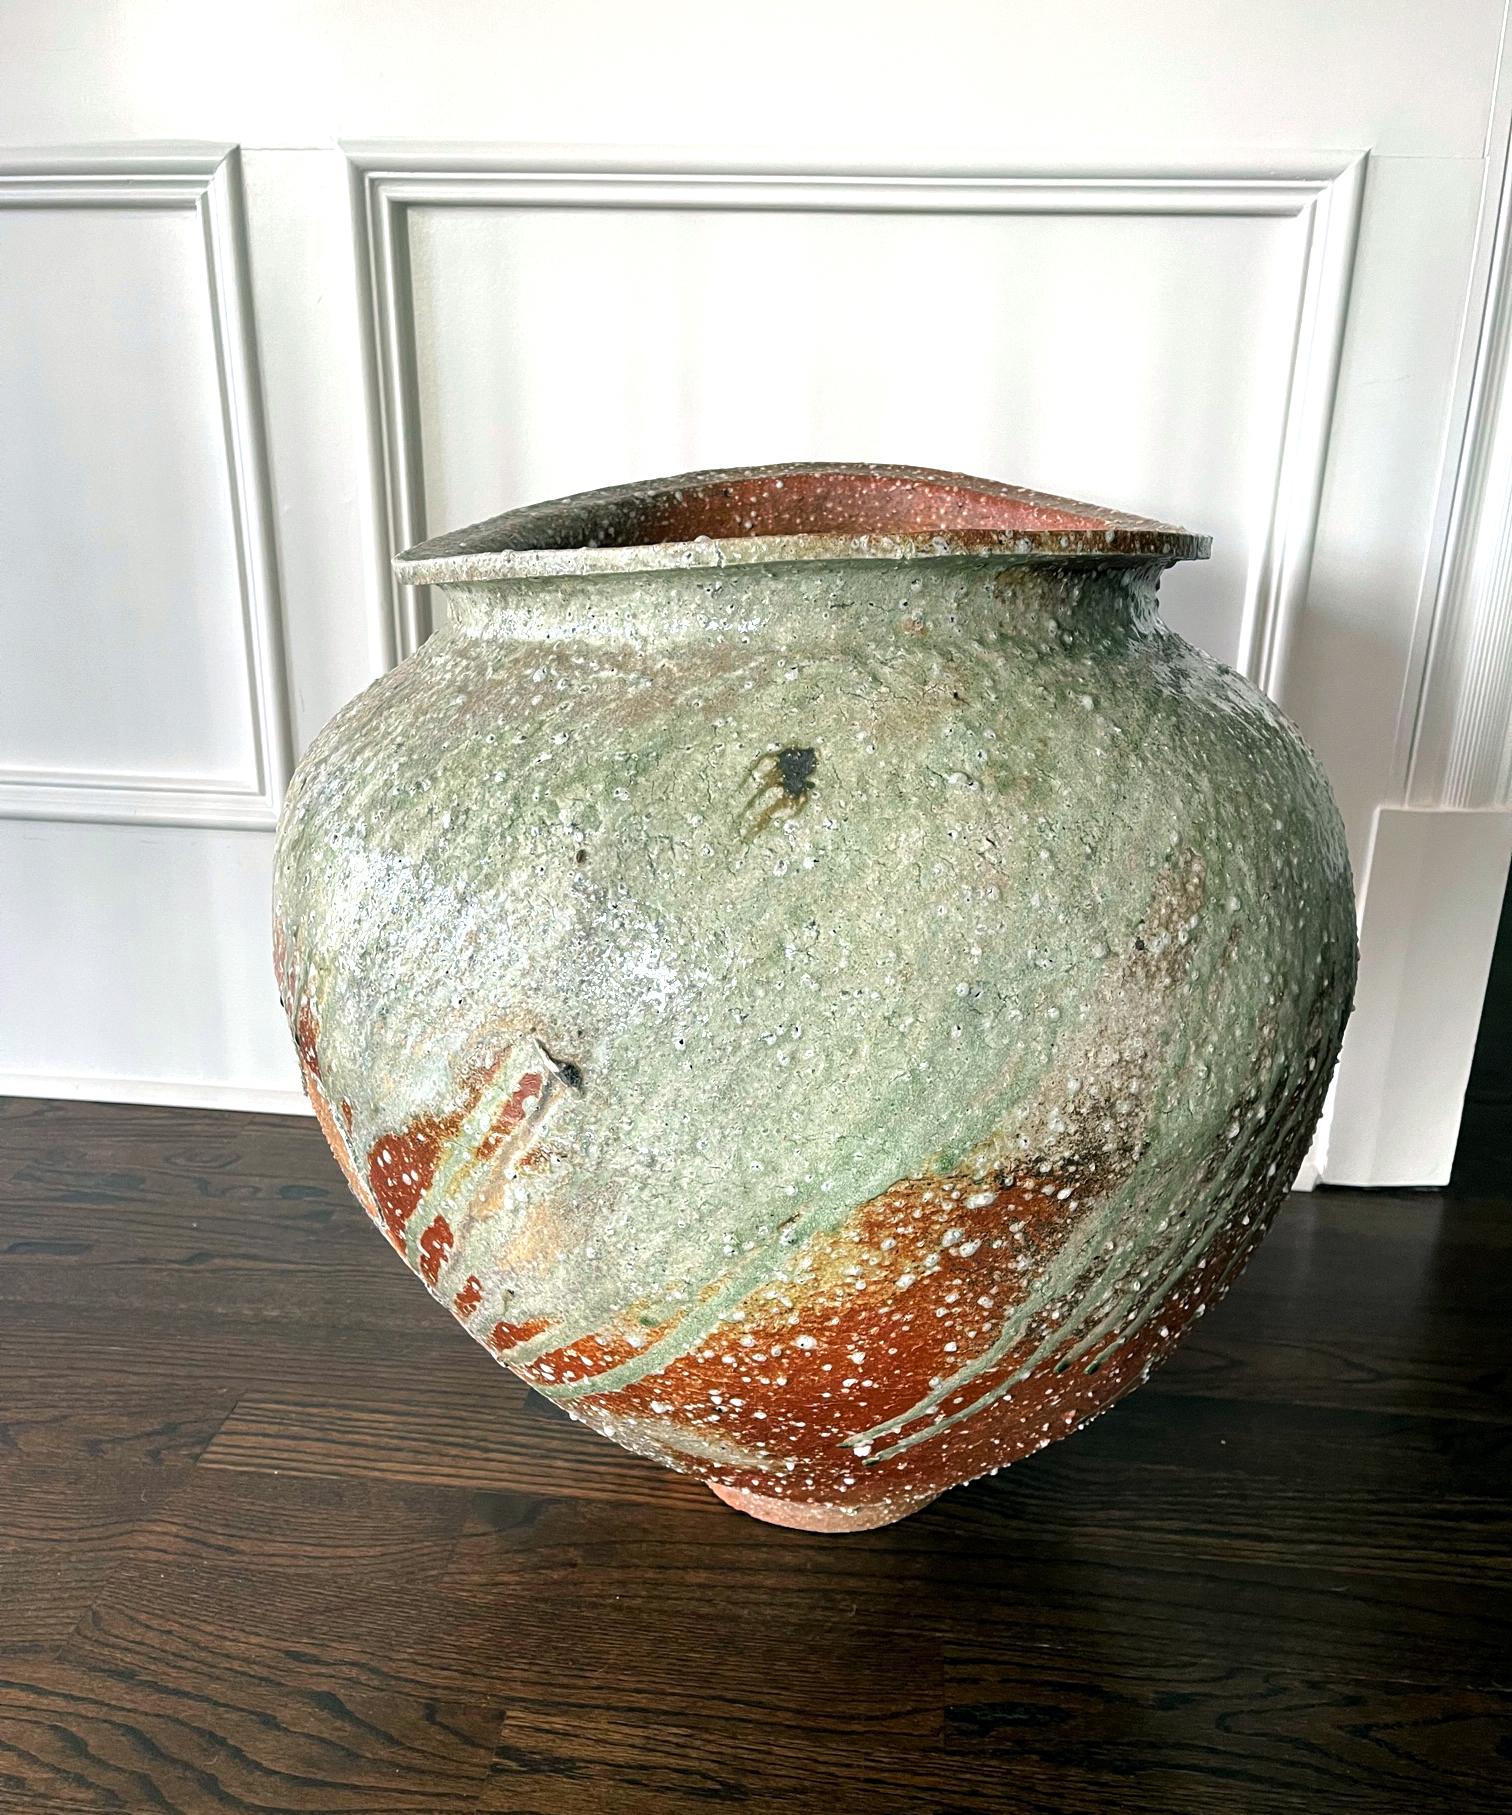 Un pot de sol massif en grès tsubo créé par l'artiste céramique contemporain japonais Kai Tsujimura (1976-). Cette lourde jarre au volume impressionnant a été fabriquée dans la tradition de la céramique d'Iga avec de l'argile sableuse grossière